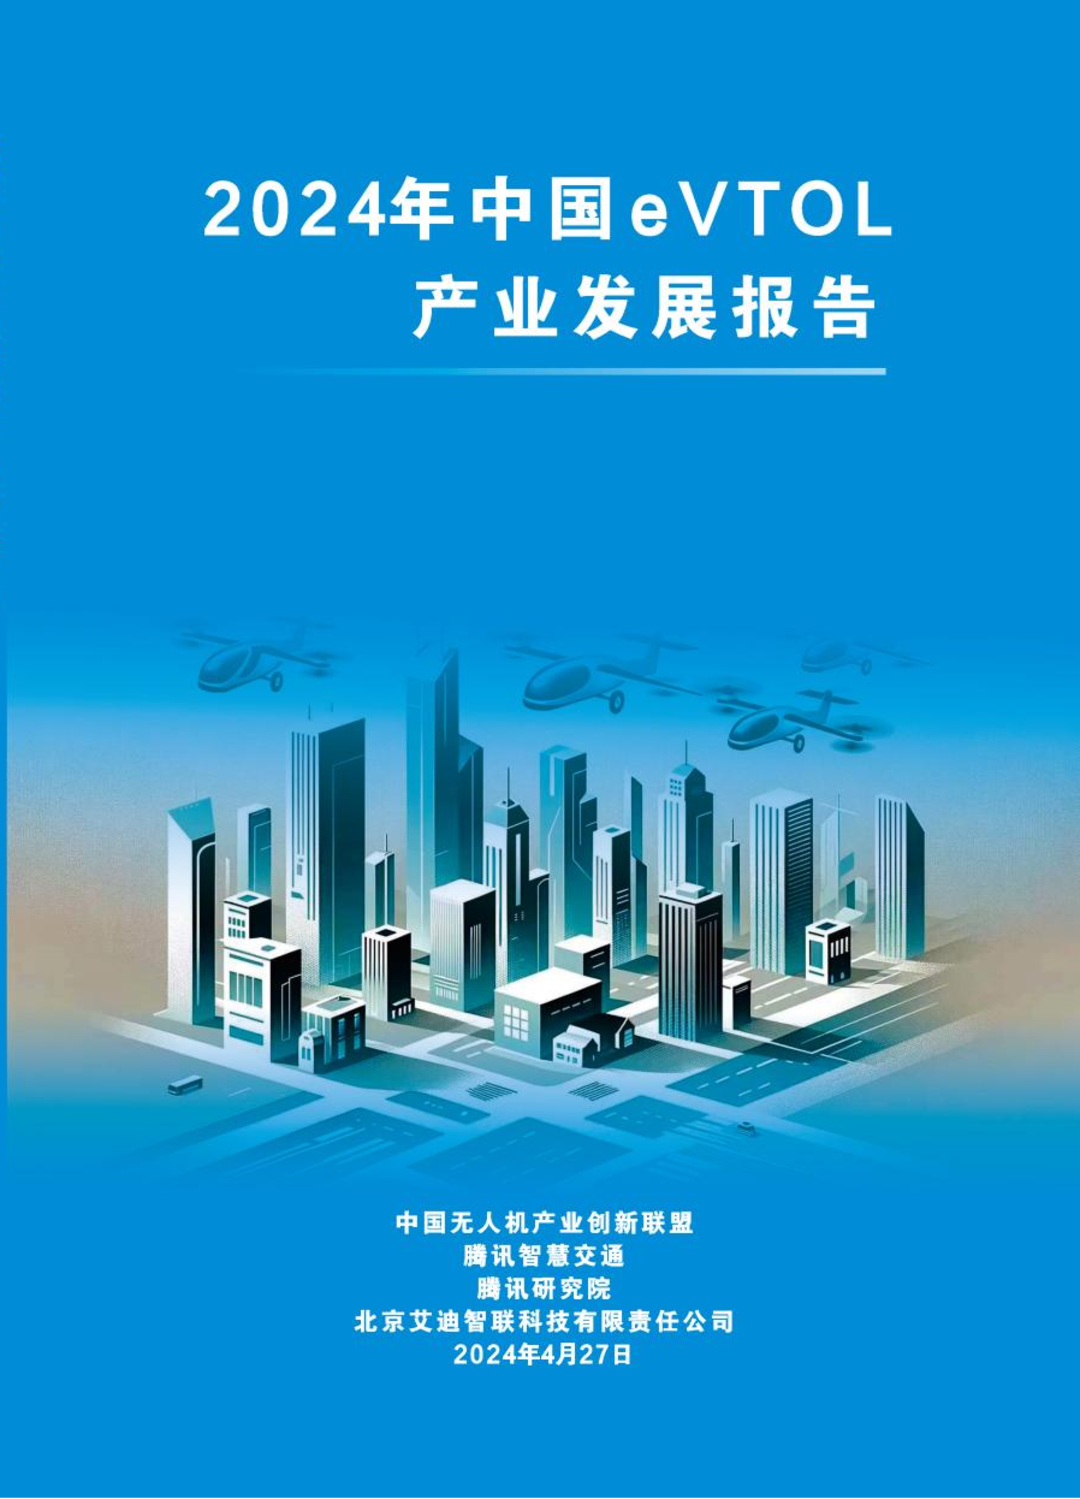 《2024年中国eVTOL产业发展报告》在京发布